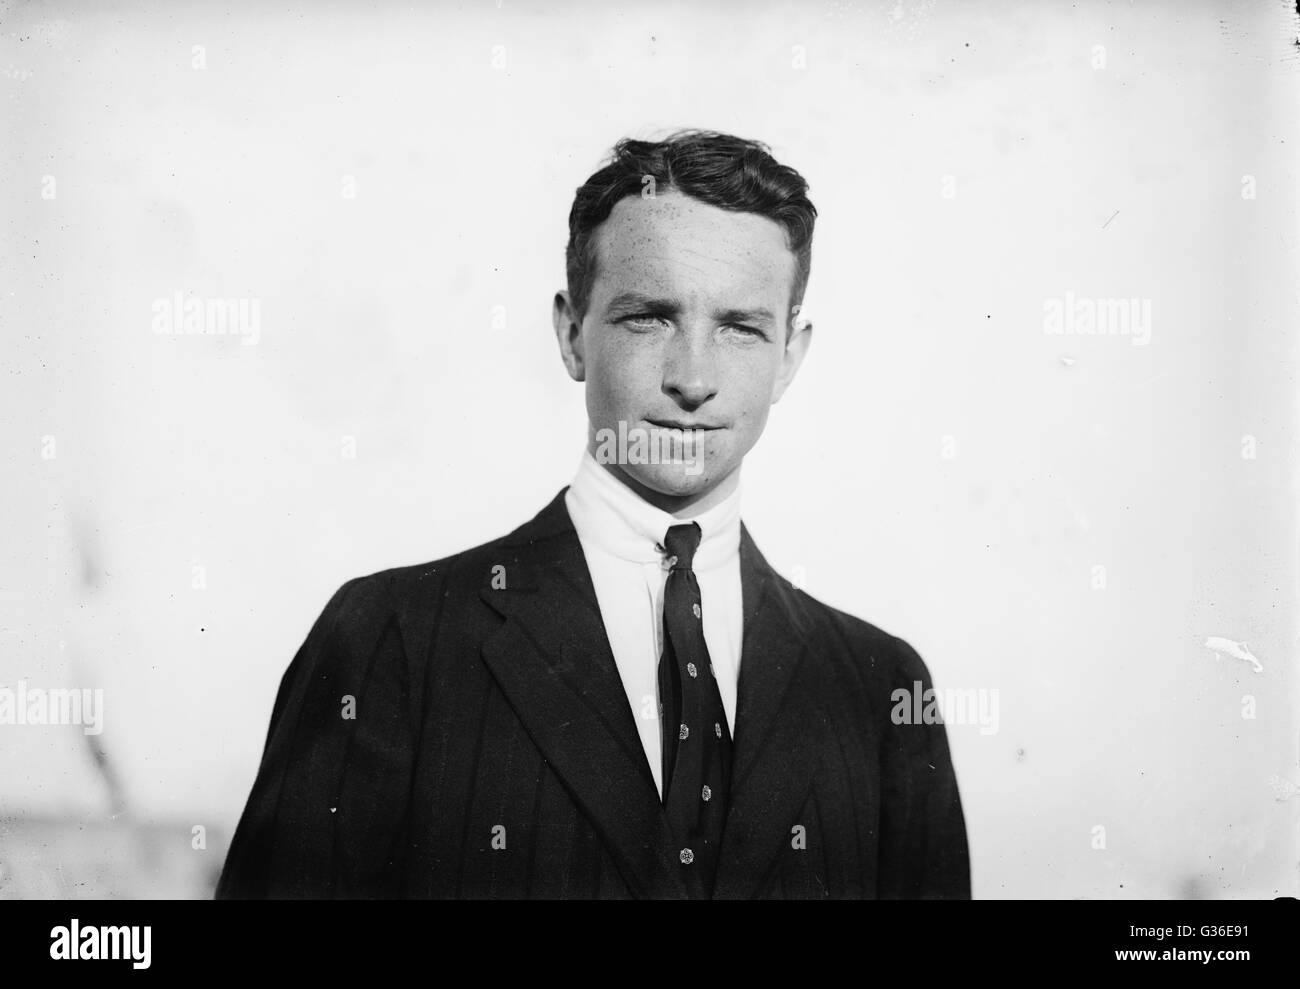 Tom Sopwith (1888-1989), frühe Flieger und Gründer der Sopwith Aviation Company. Sein Geschäft gebaut 18.000 Flugzeuge für Großbritannien im ersten Weltkrieg, darunter die berühmte Sopwith Camel. . Stockfoto